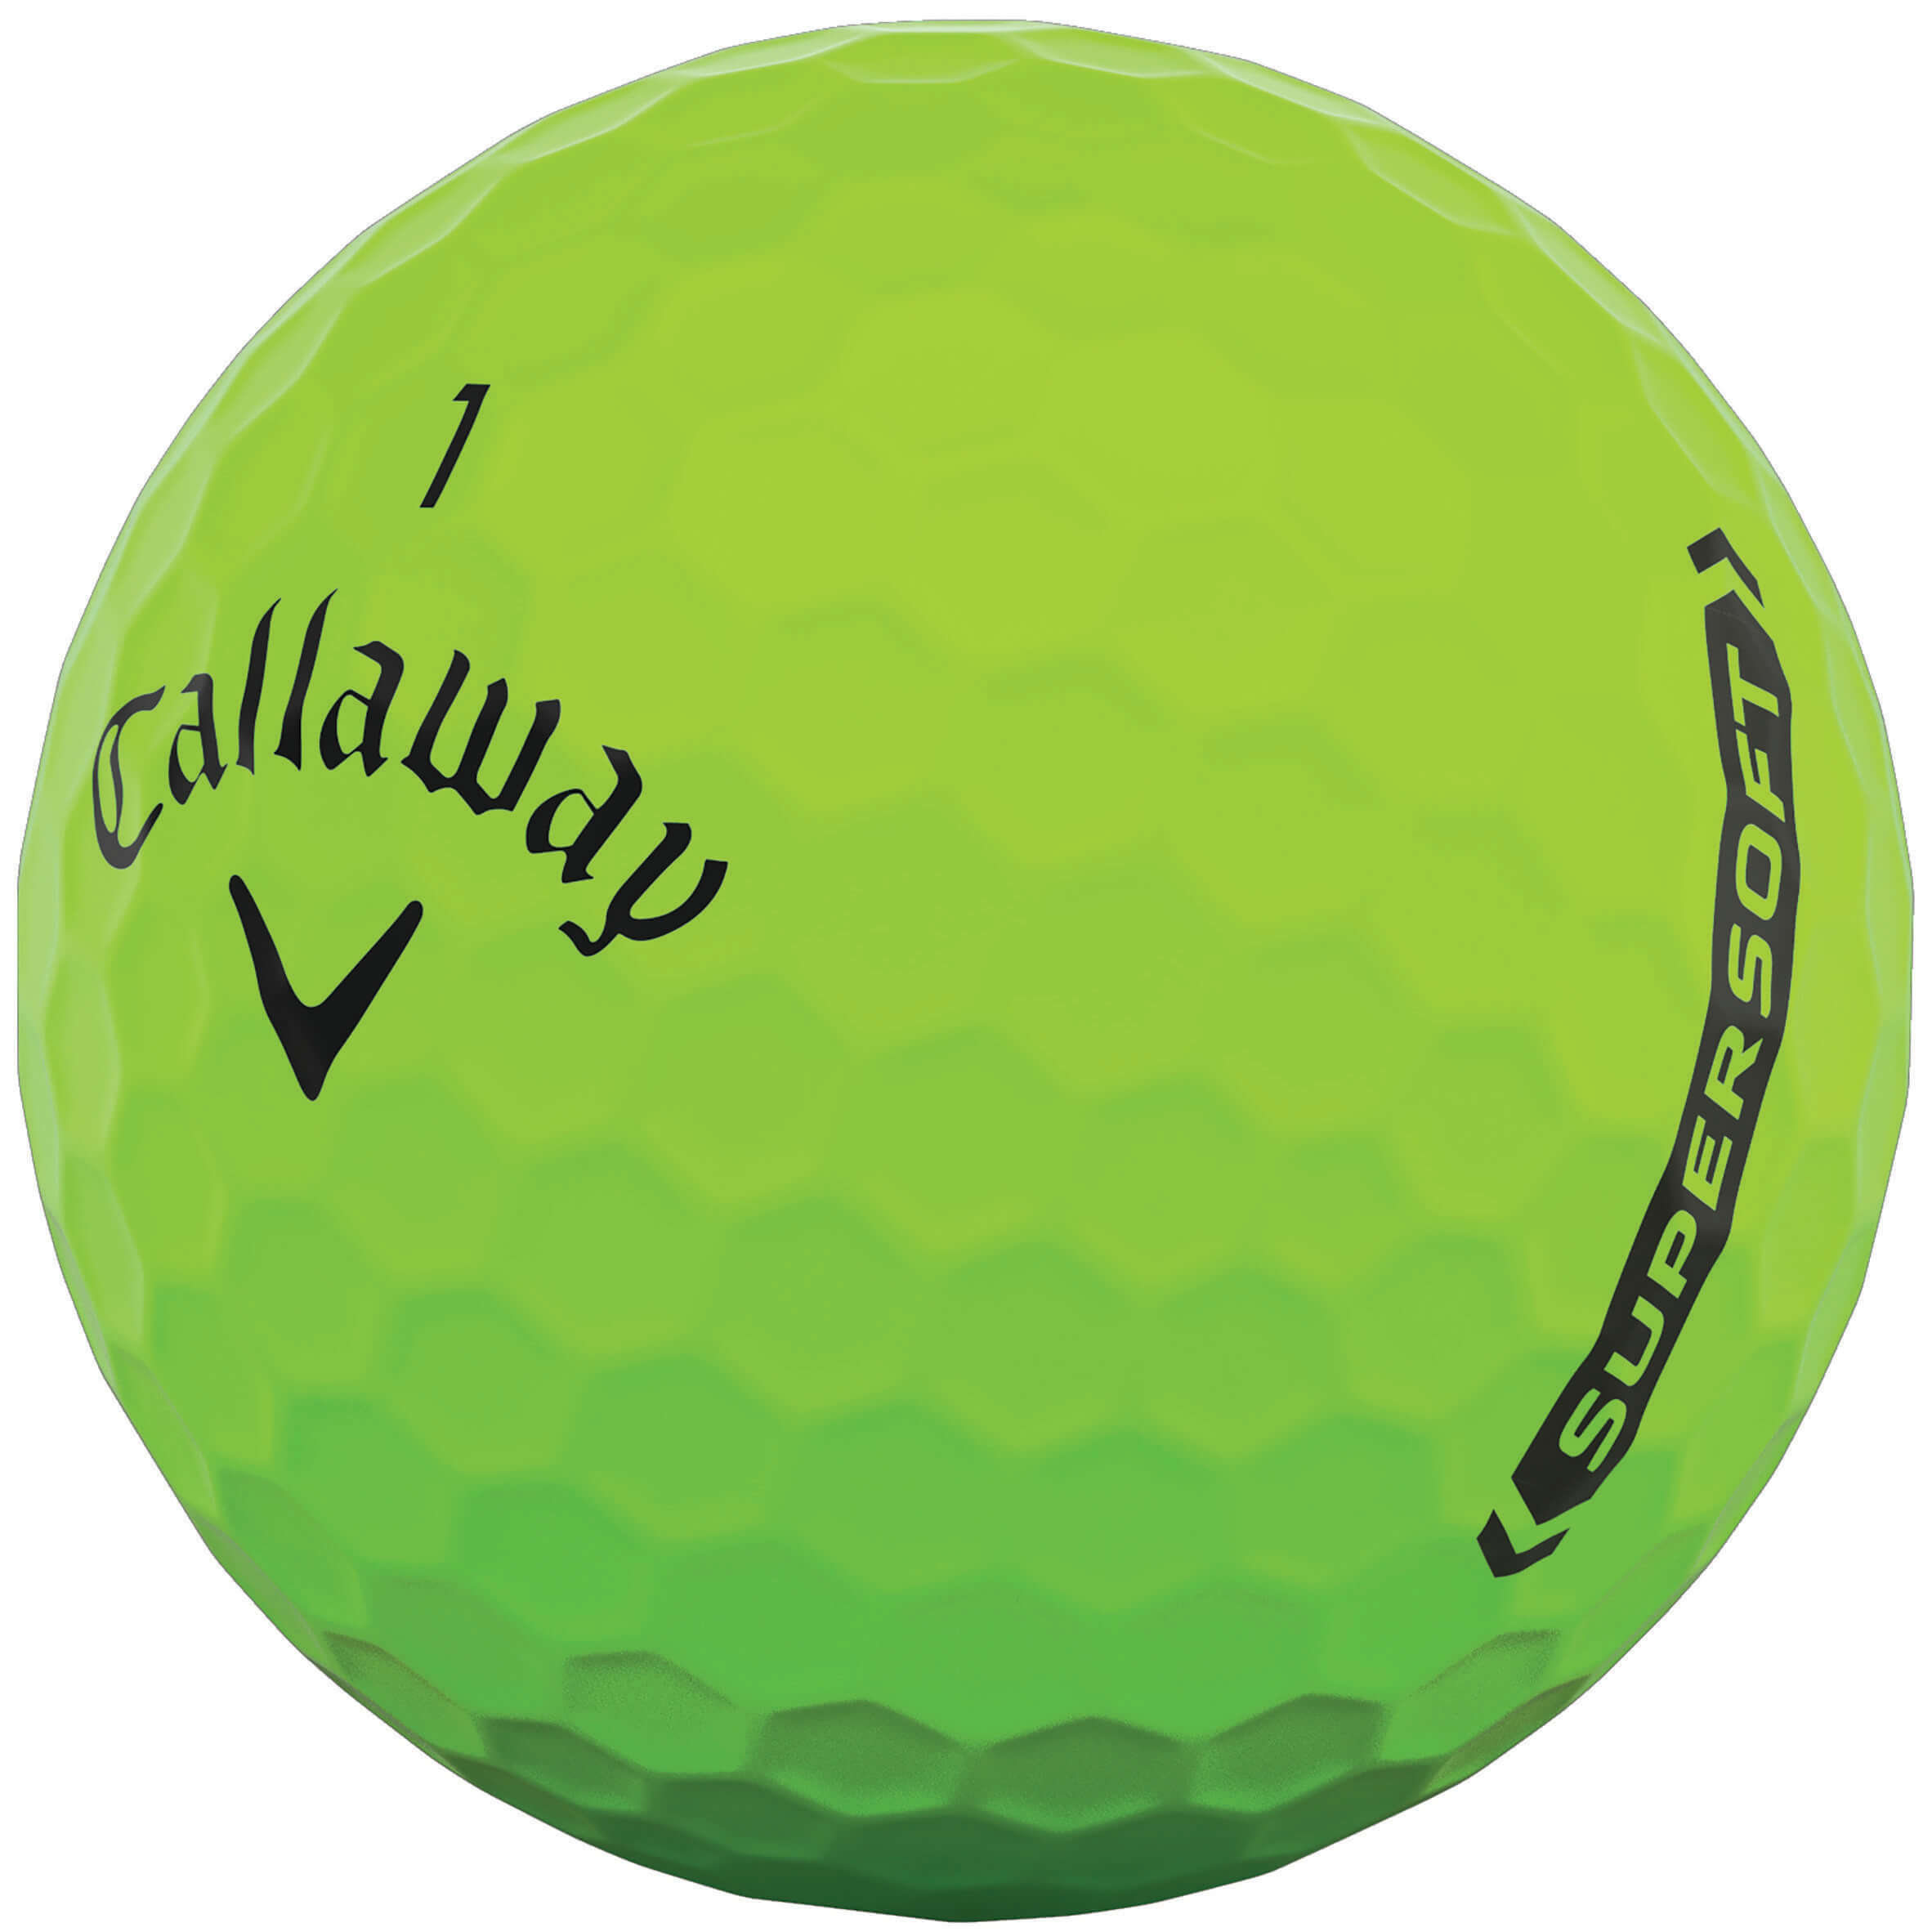 Callaway Supersoft Golfbälle, matte green